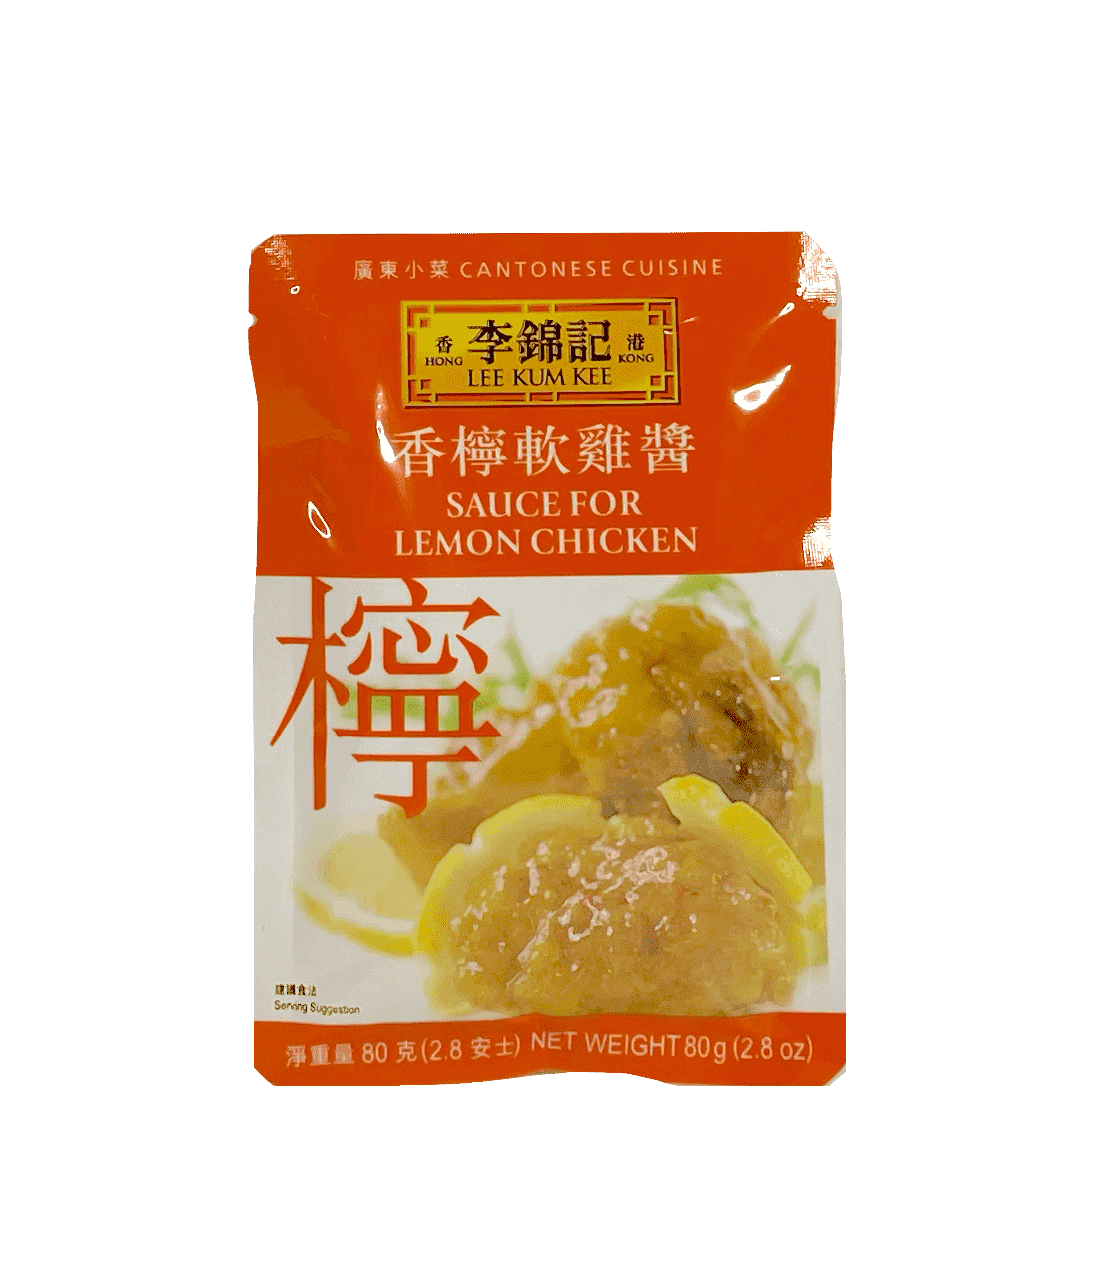 Best Before: 2022.11.06 Sauce for Lemon Chicken 80g LKK China